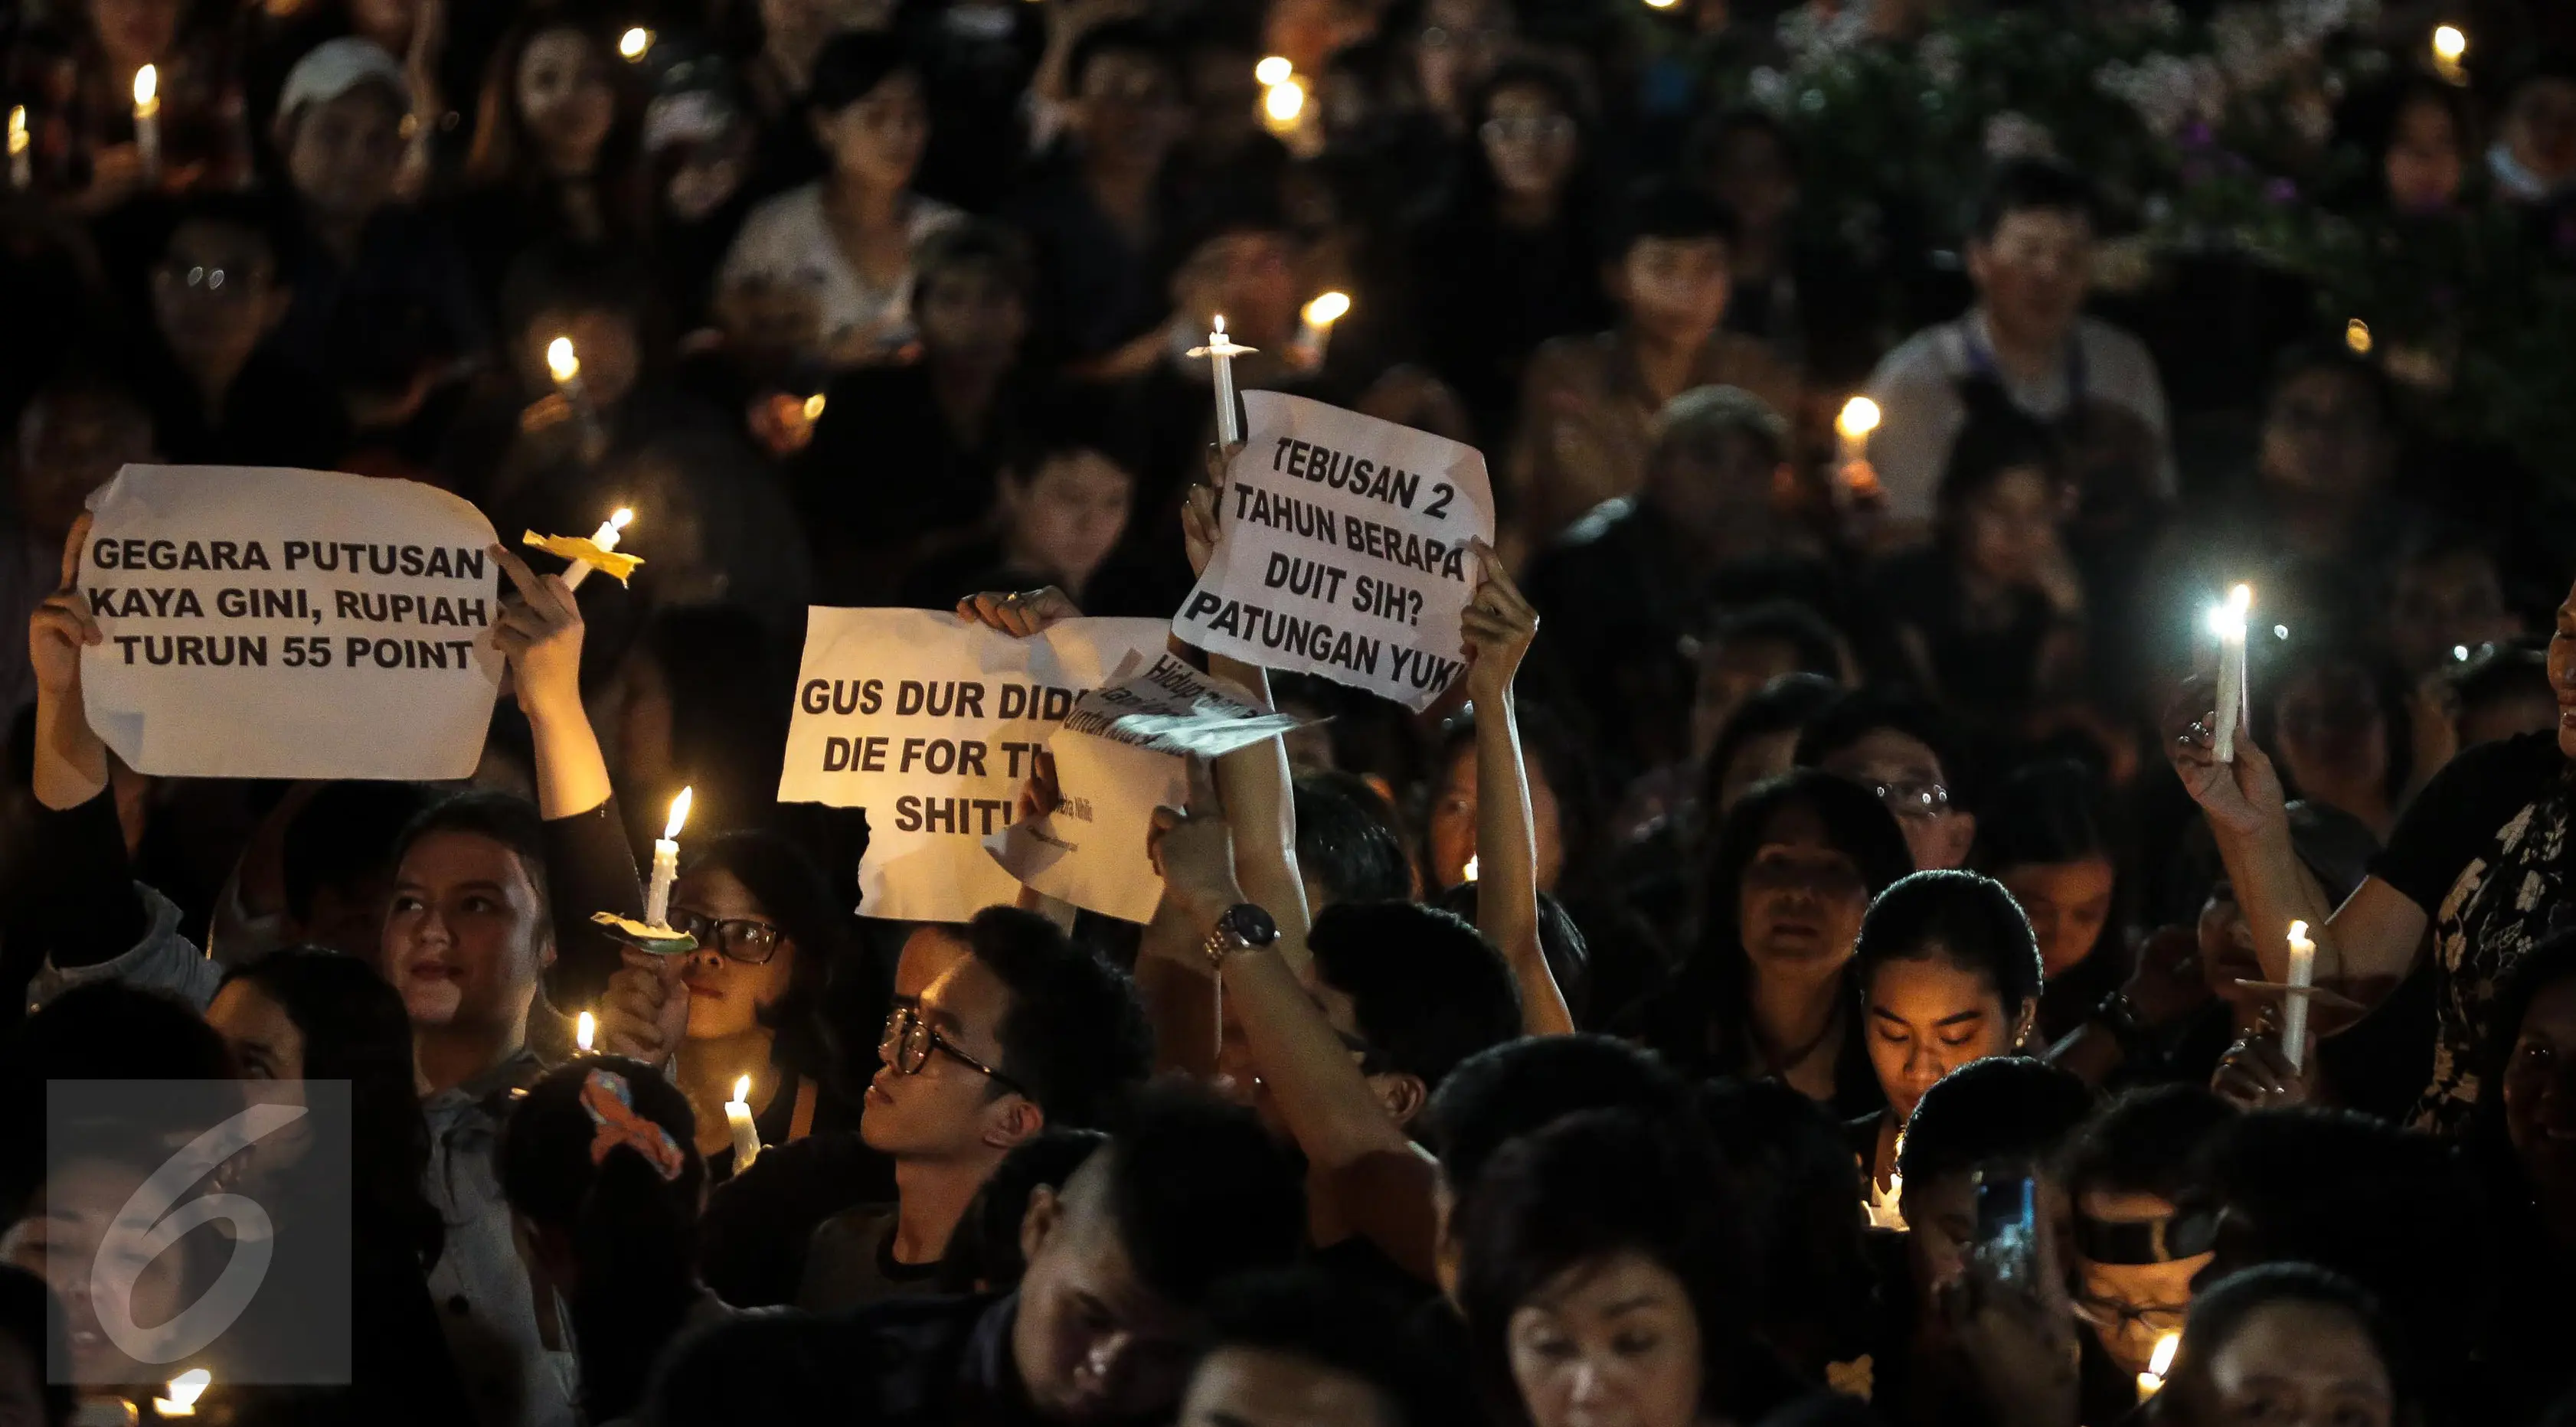 Ribuan pendukung Ahok menggelar acara Malam Solidaritas atas Matinya Keadilan di Tugu Proklamasi, Jakarta (10/05). Mereka datang mengenakan pakaian hitam-hitam. (Liputan6.com/Faizal Fanani)